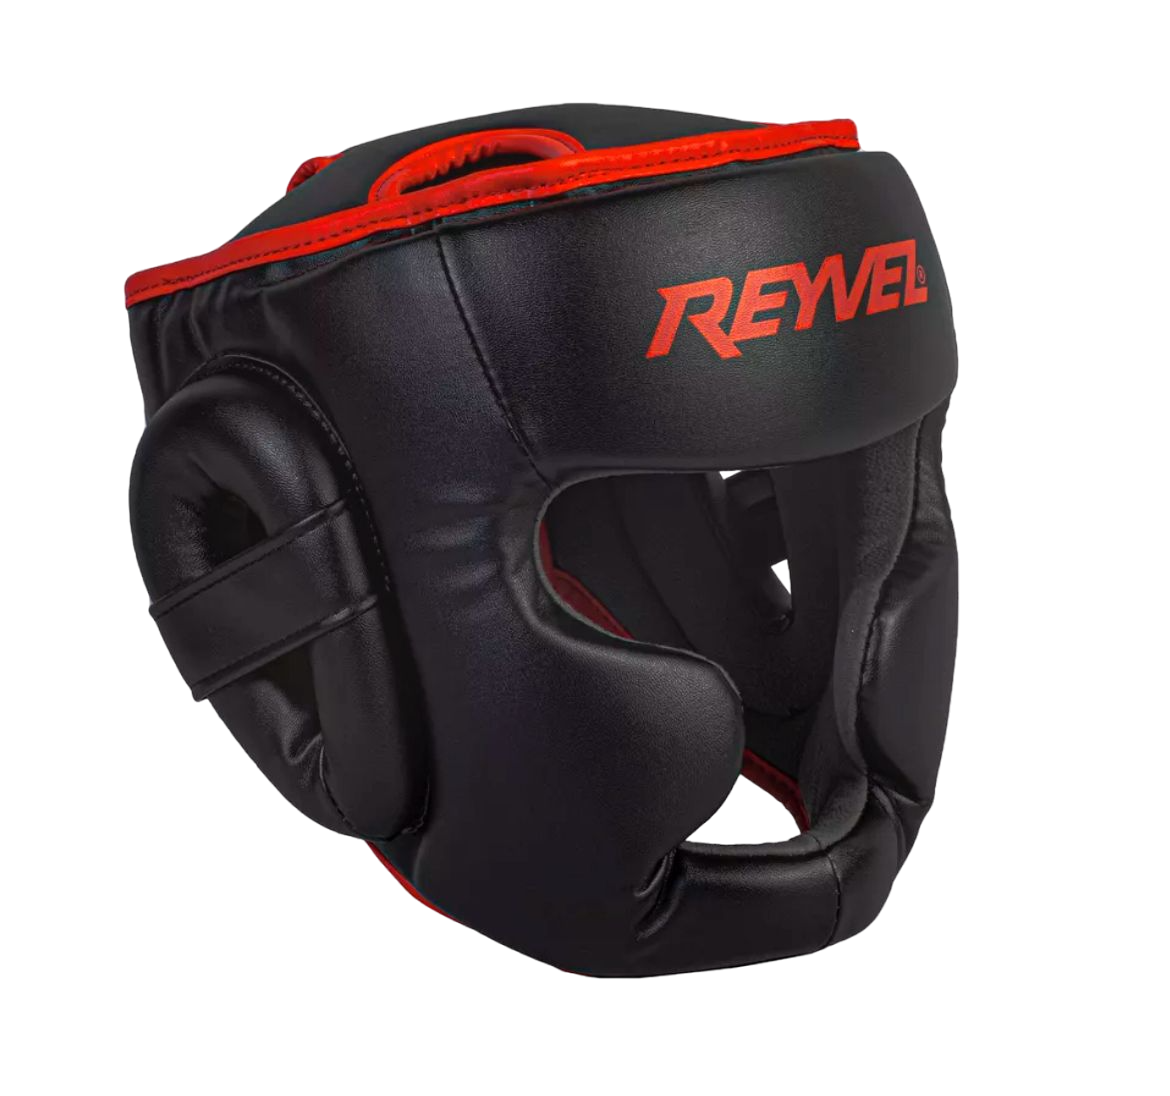  Шлем Reyvel тренировочный Full Face черно красный 